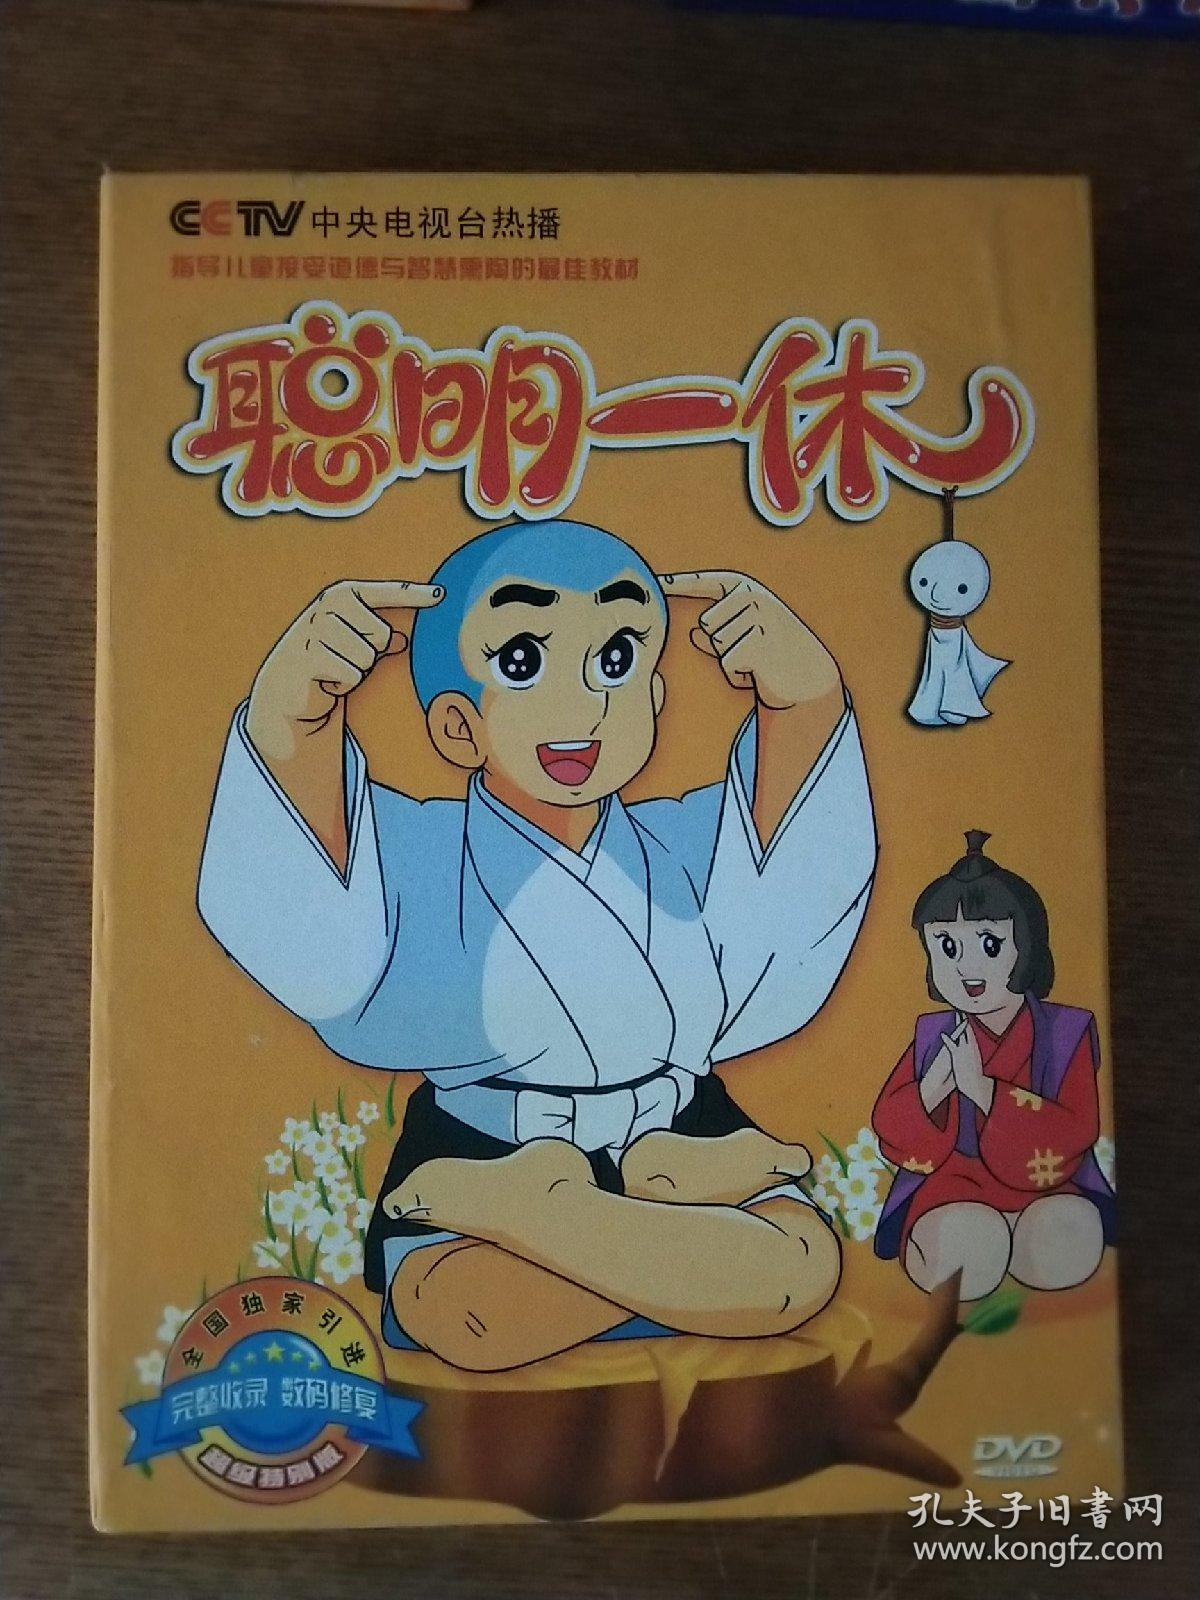 卡通片聪明的一休第一部9碟装dvd超级特别版完整版国语配音中文字幕碟